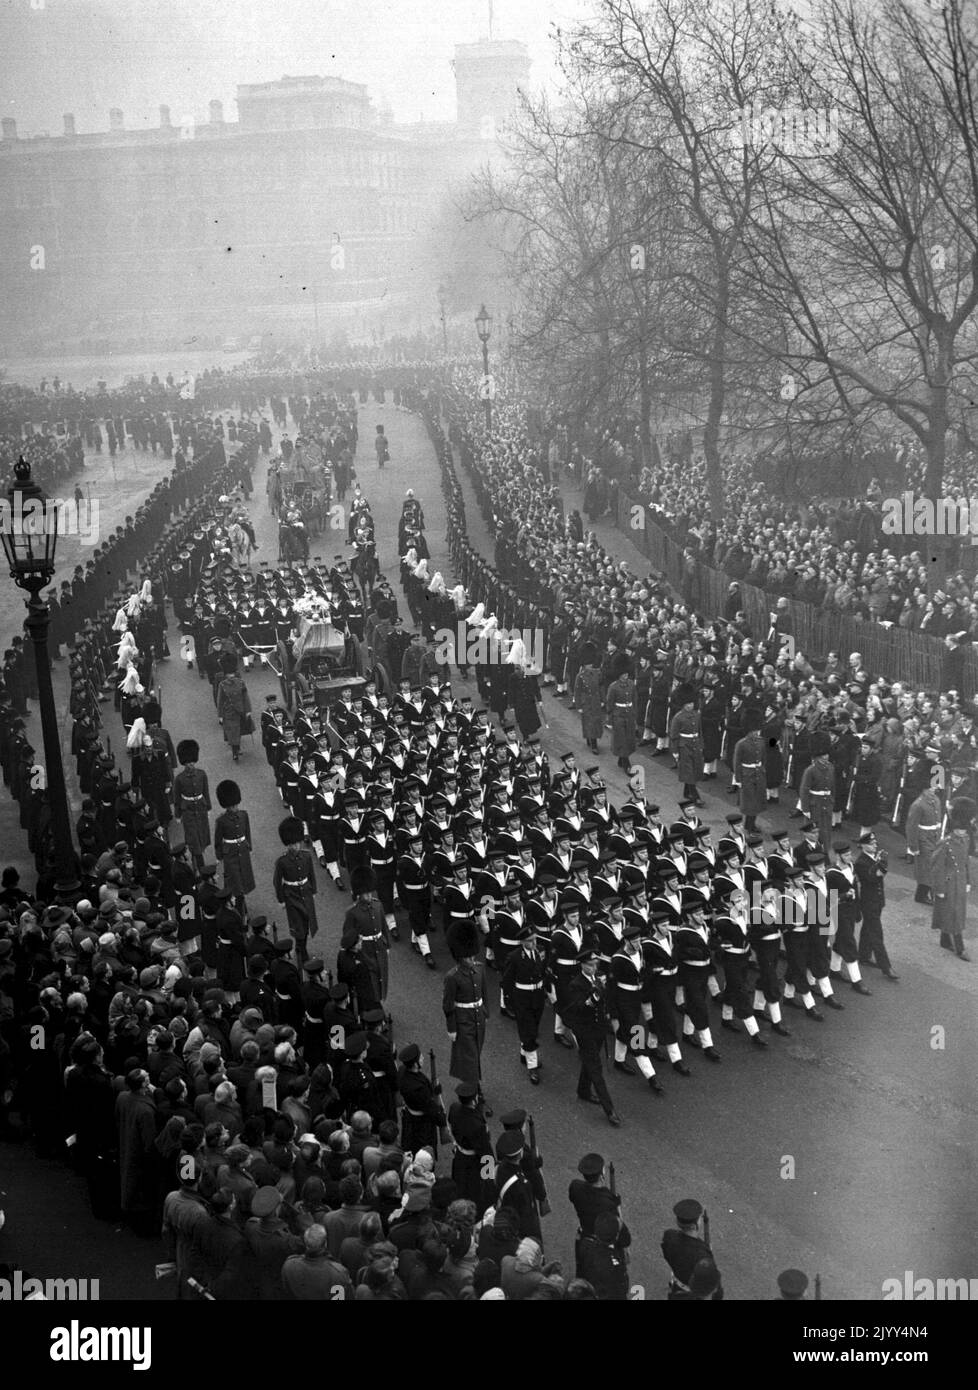 Aktenfoto vom 15/2/1953 des Begräbnisses von König George VI, der auf einem Waffenwagen von der Horse Guards Parade in die Mall auf dem Weg zur Paddington Station zog. Ausgabedatum: Donnerstag, 8. September 2022. Stockfoto